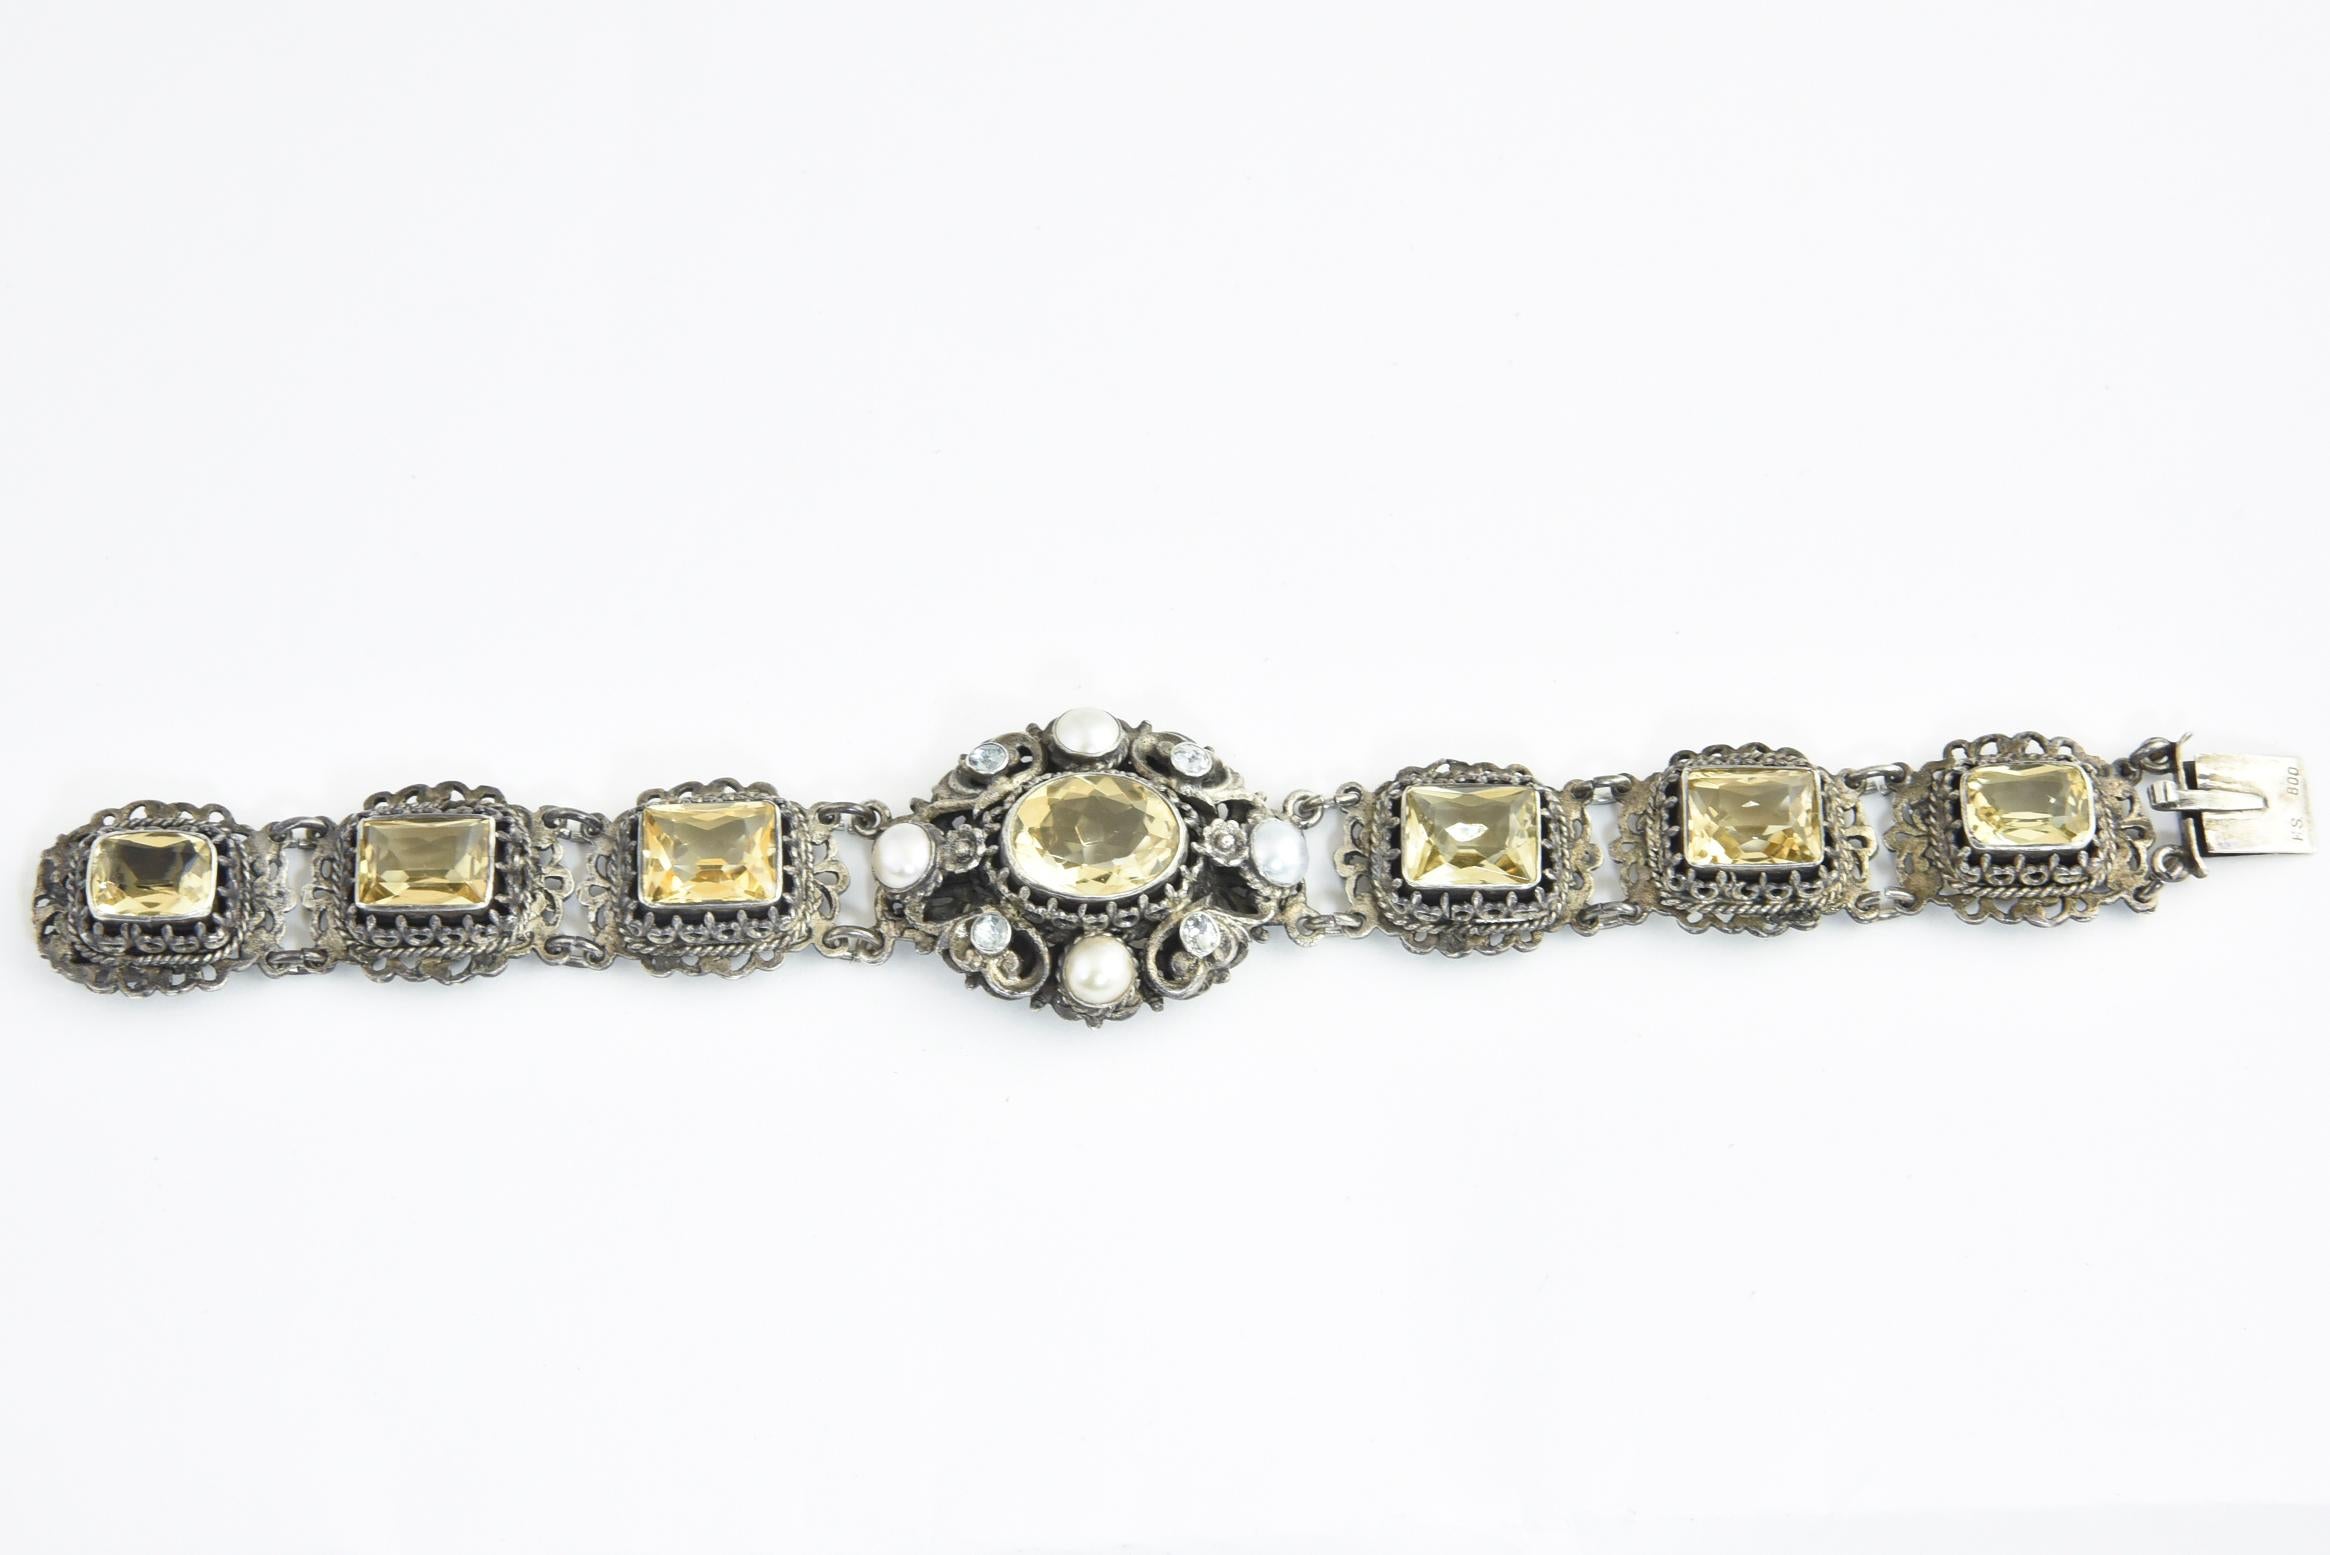 Österreichisch-ungarischer Citrin-Armreif, entstanden zwischen 1860 und 1910. Ein ovaler Citrin, umgeben von einem verzierten Silberrahmen mit Perlen- und Pastenakzenten. Der Hauptteil besteht aus einem Band mit 6 Zitrinen, die in silberne Rahmen